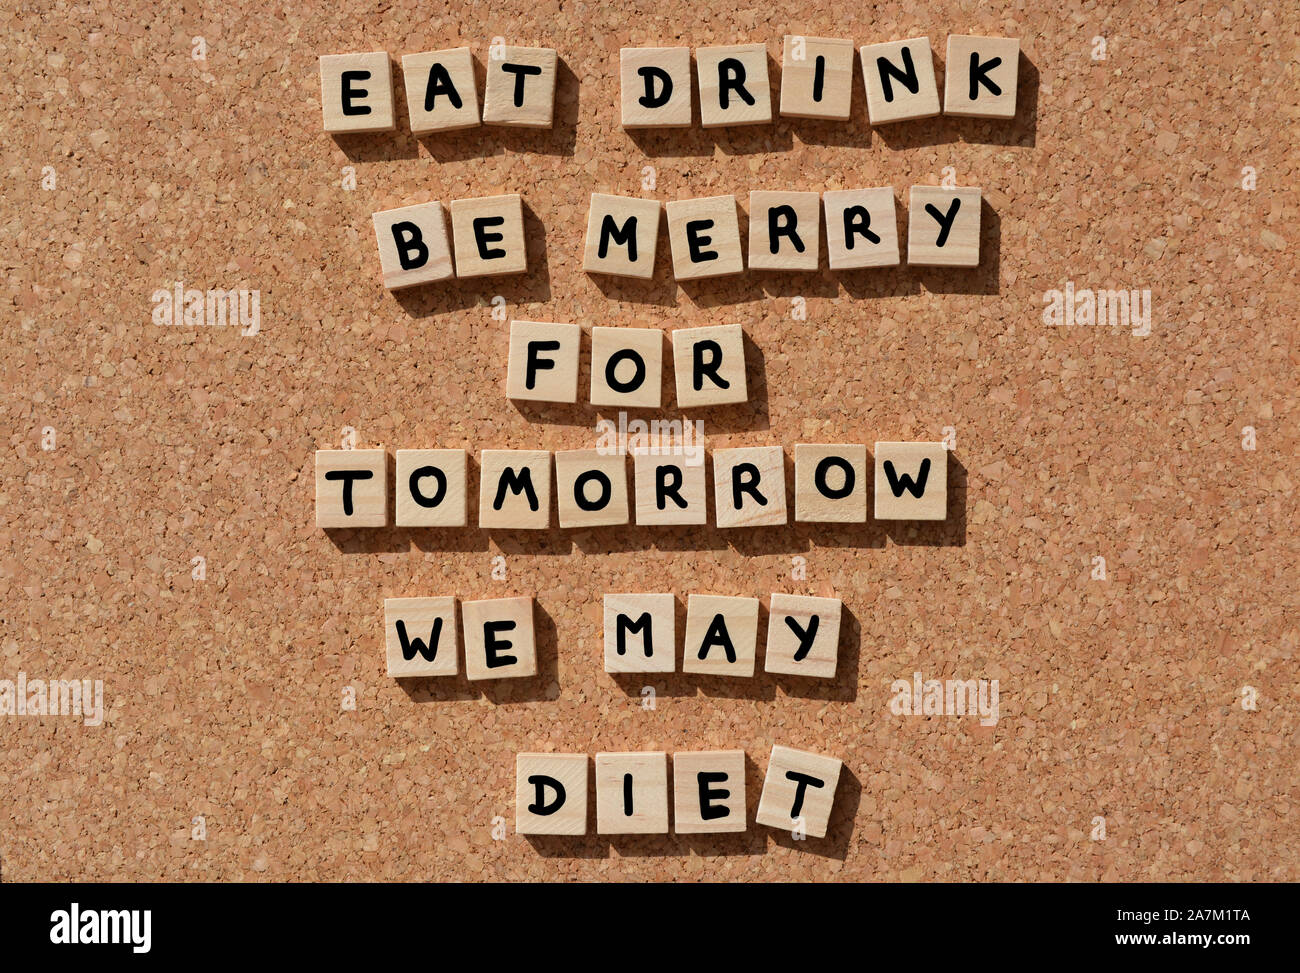 Essen, Trinken, werden Merry für Morgen können wir Diät, Wörter in 3d Holz- Alphabet Buchstaben auf einer Pinnwand Hintergrund Stockfoto